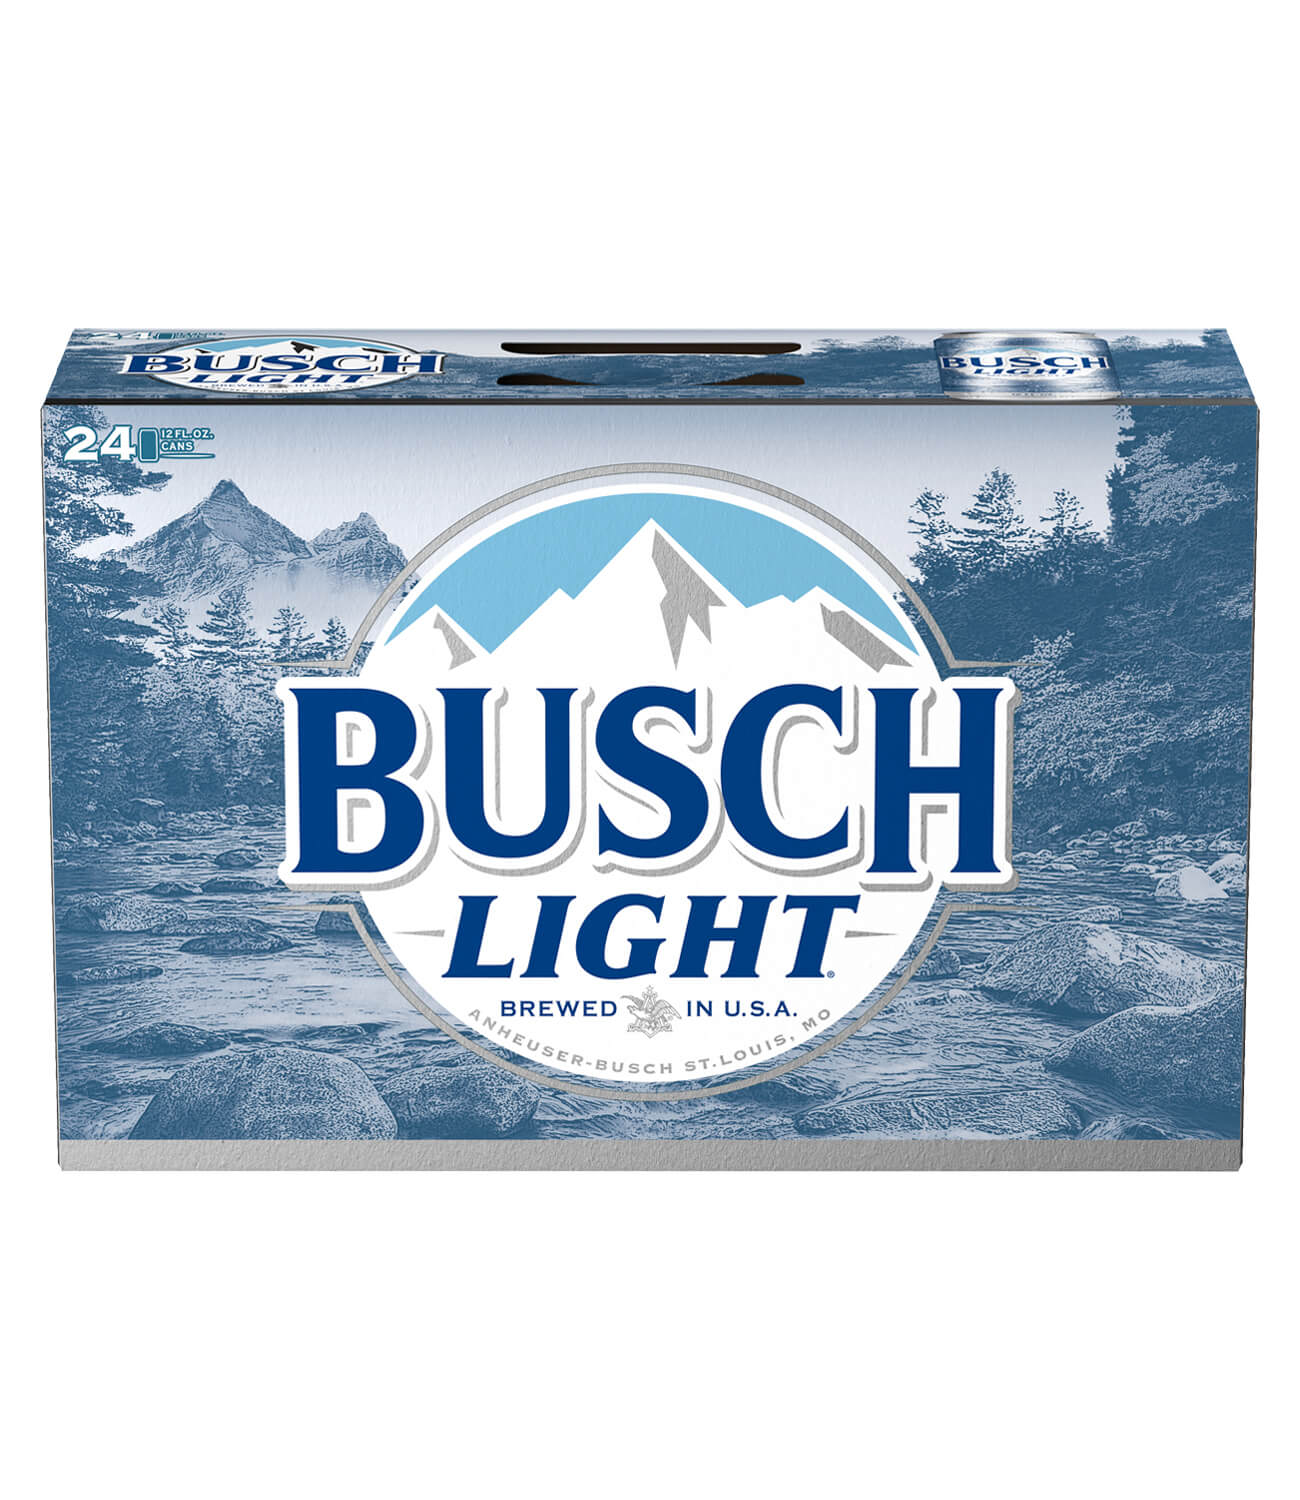 Busch Light.